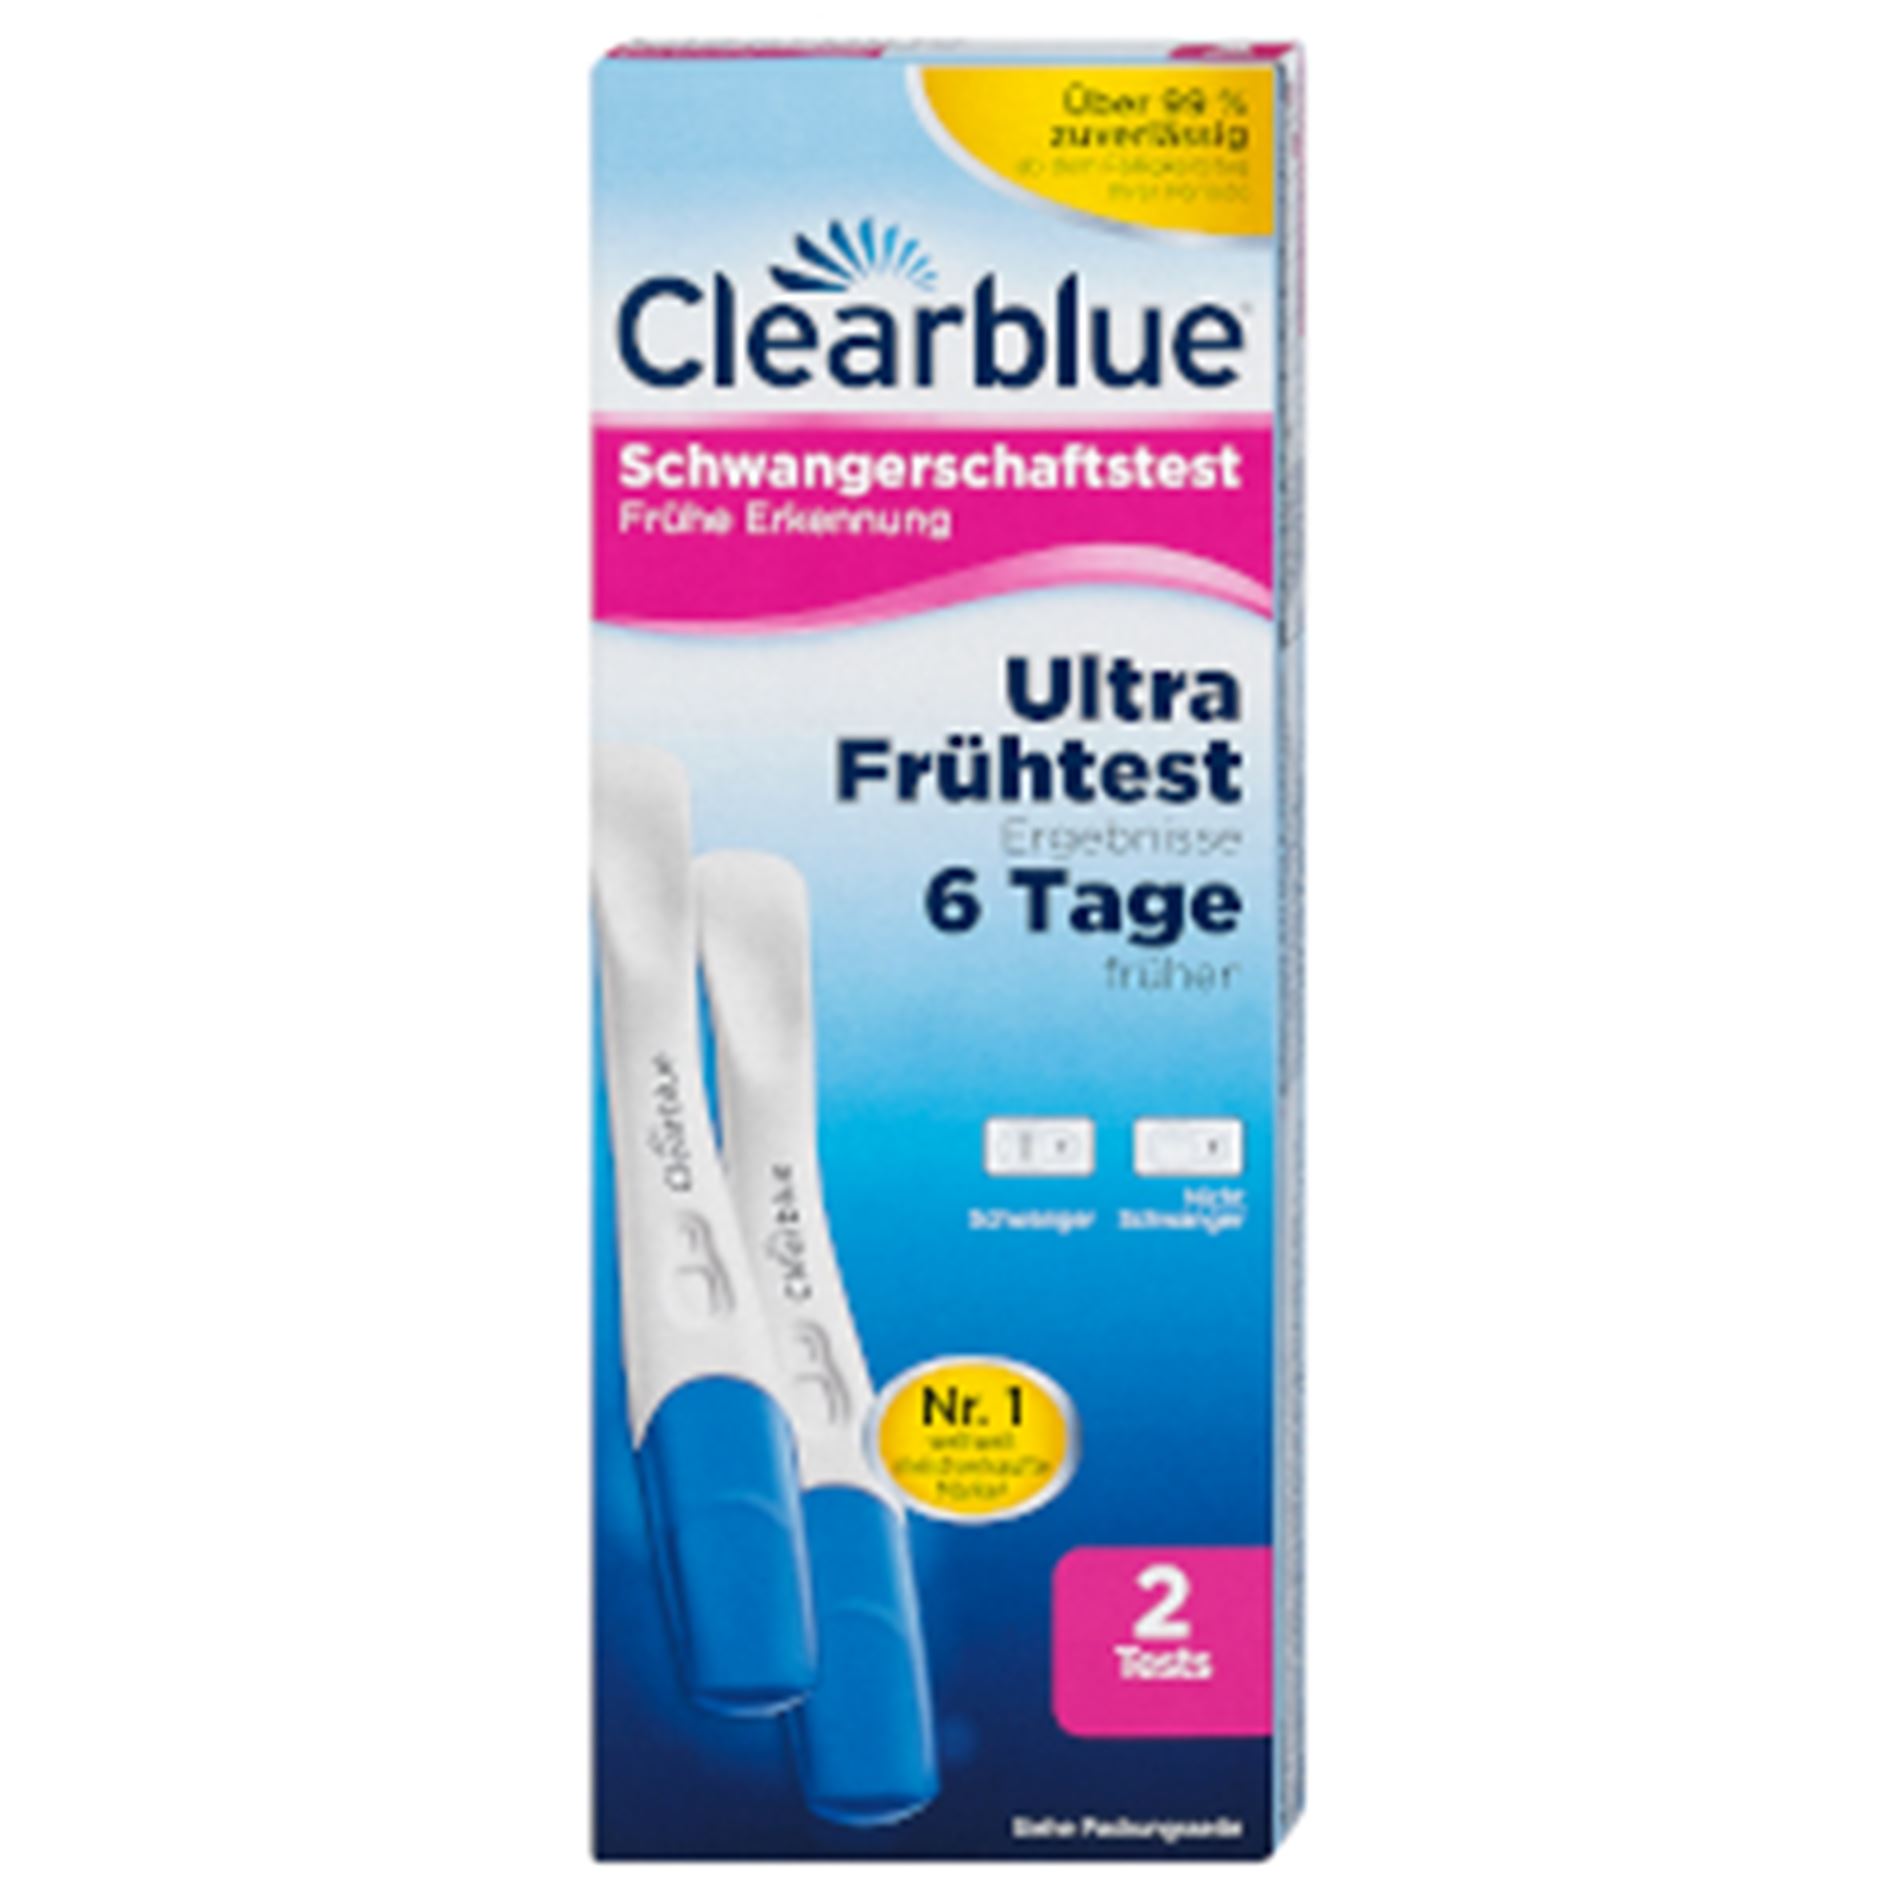 Clearblue dm schwangerschaftstest Clearblue digital